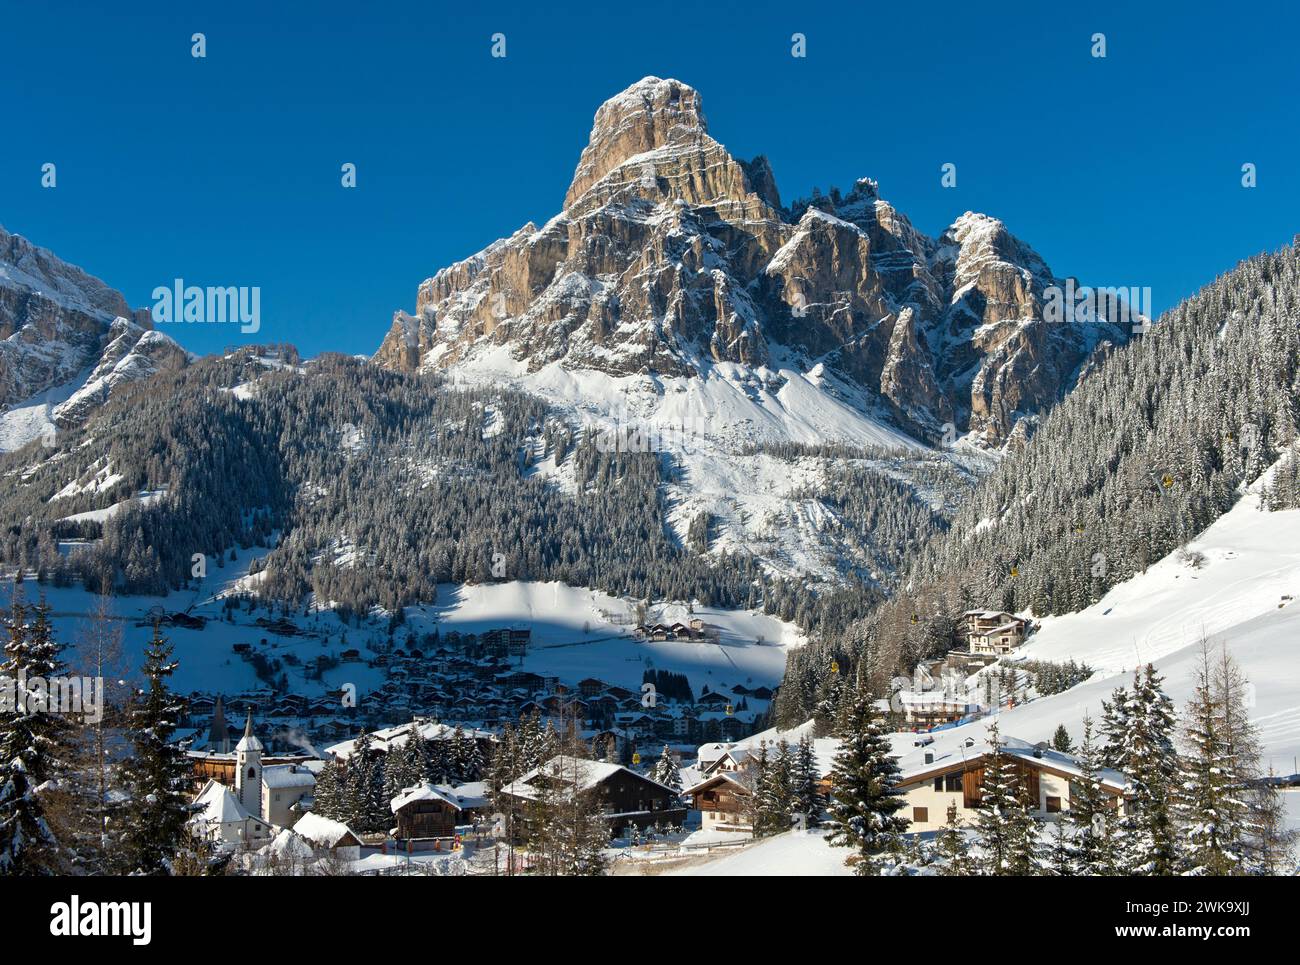 Il paese di montagna di Corvara ai piedi della vetta del Sassongher in inverno, l'area sciistica dell'alta Badia, le Dolomiti, l'alto Adige, l'Italia Foto Stock